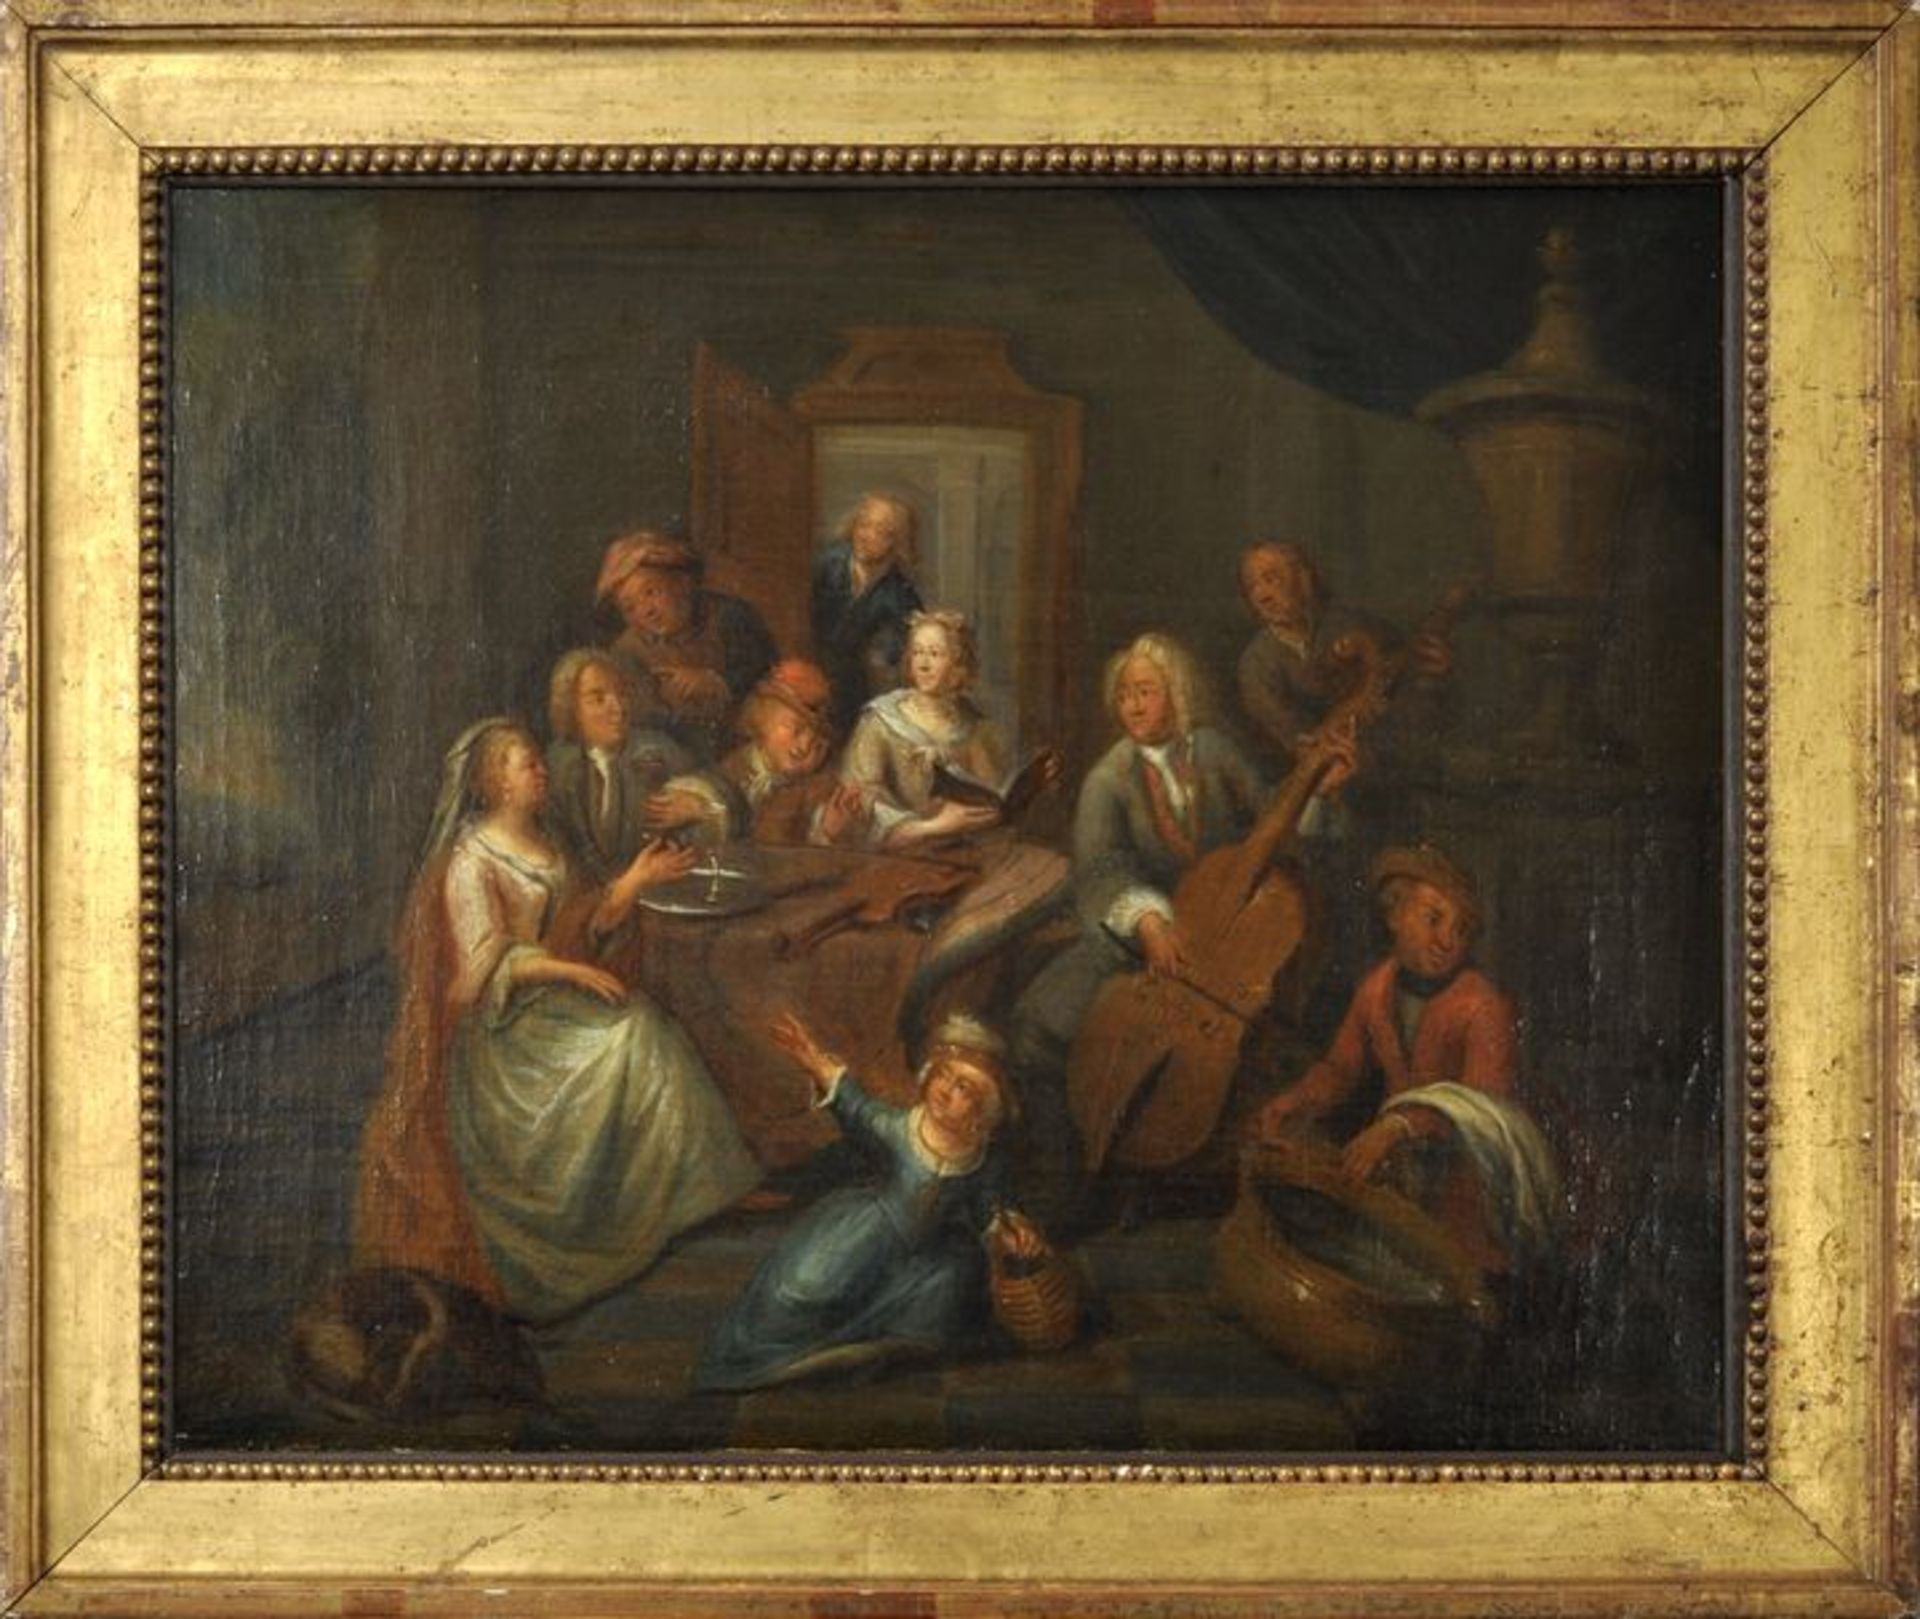 Blommaerdt, Maximilian. Tätig um 1700 Antwerpen, zugeschr. Musikalische Gesellschaft. Öl auf - Bild 3 aus 3